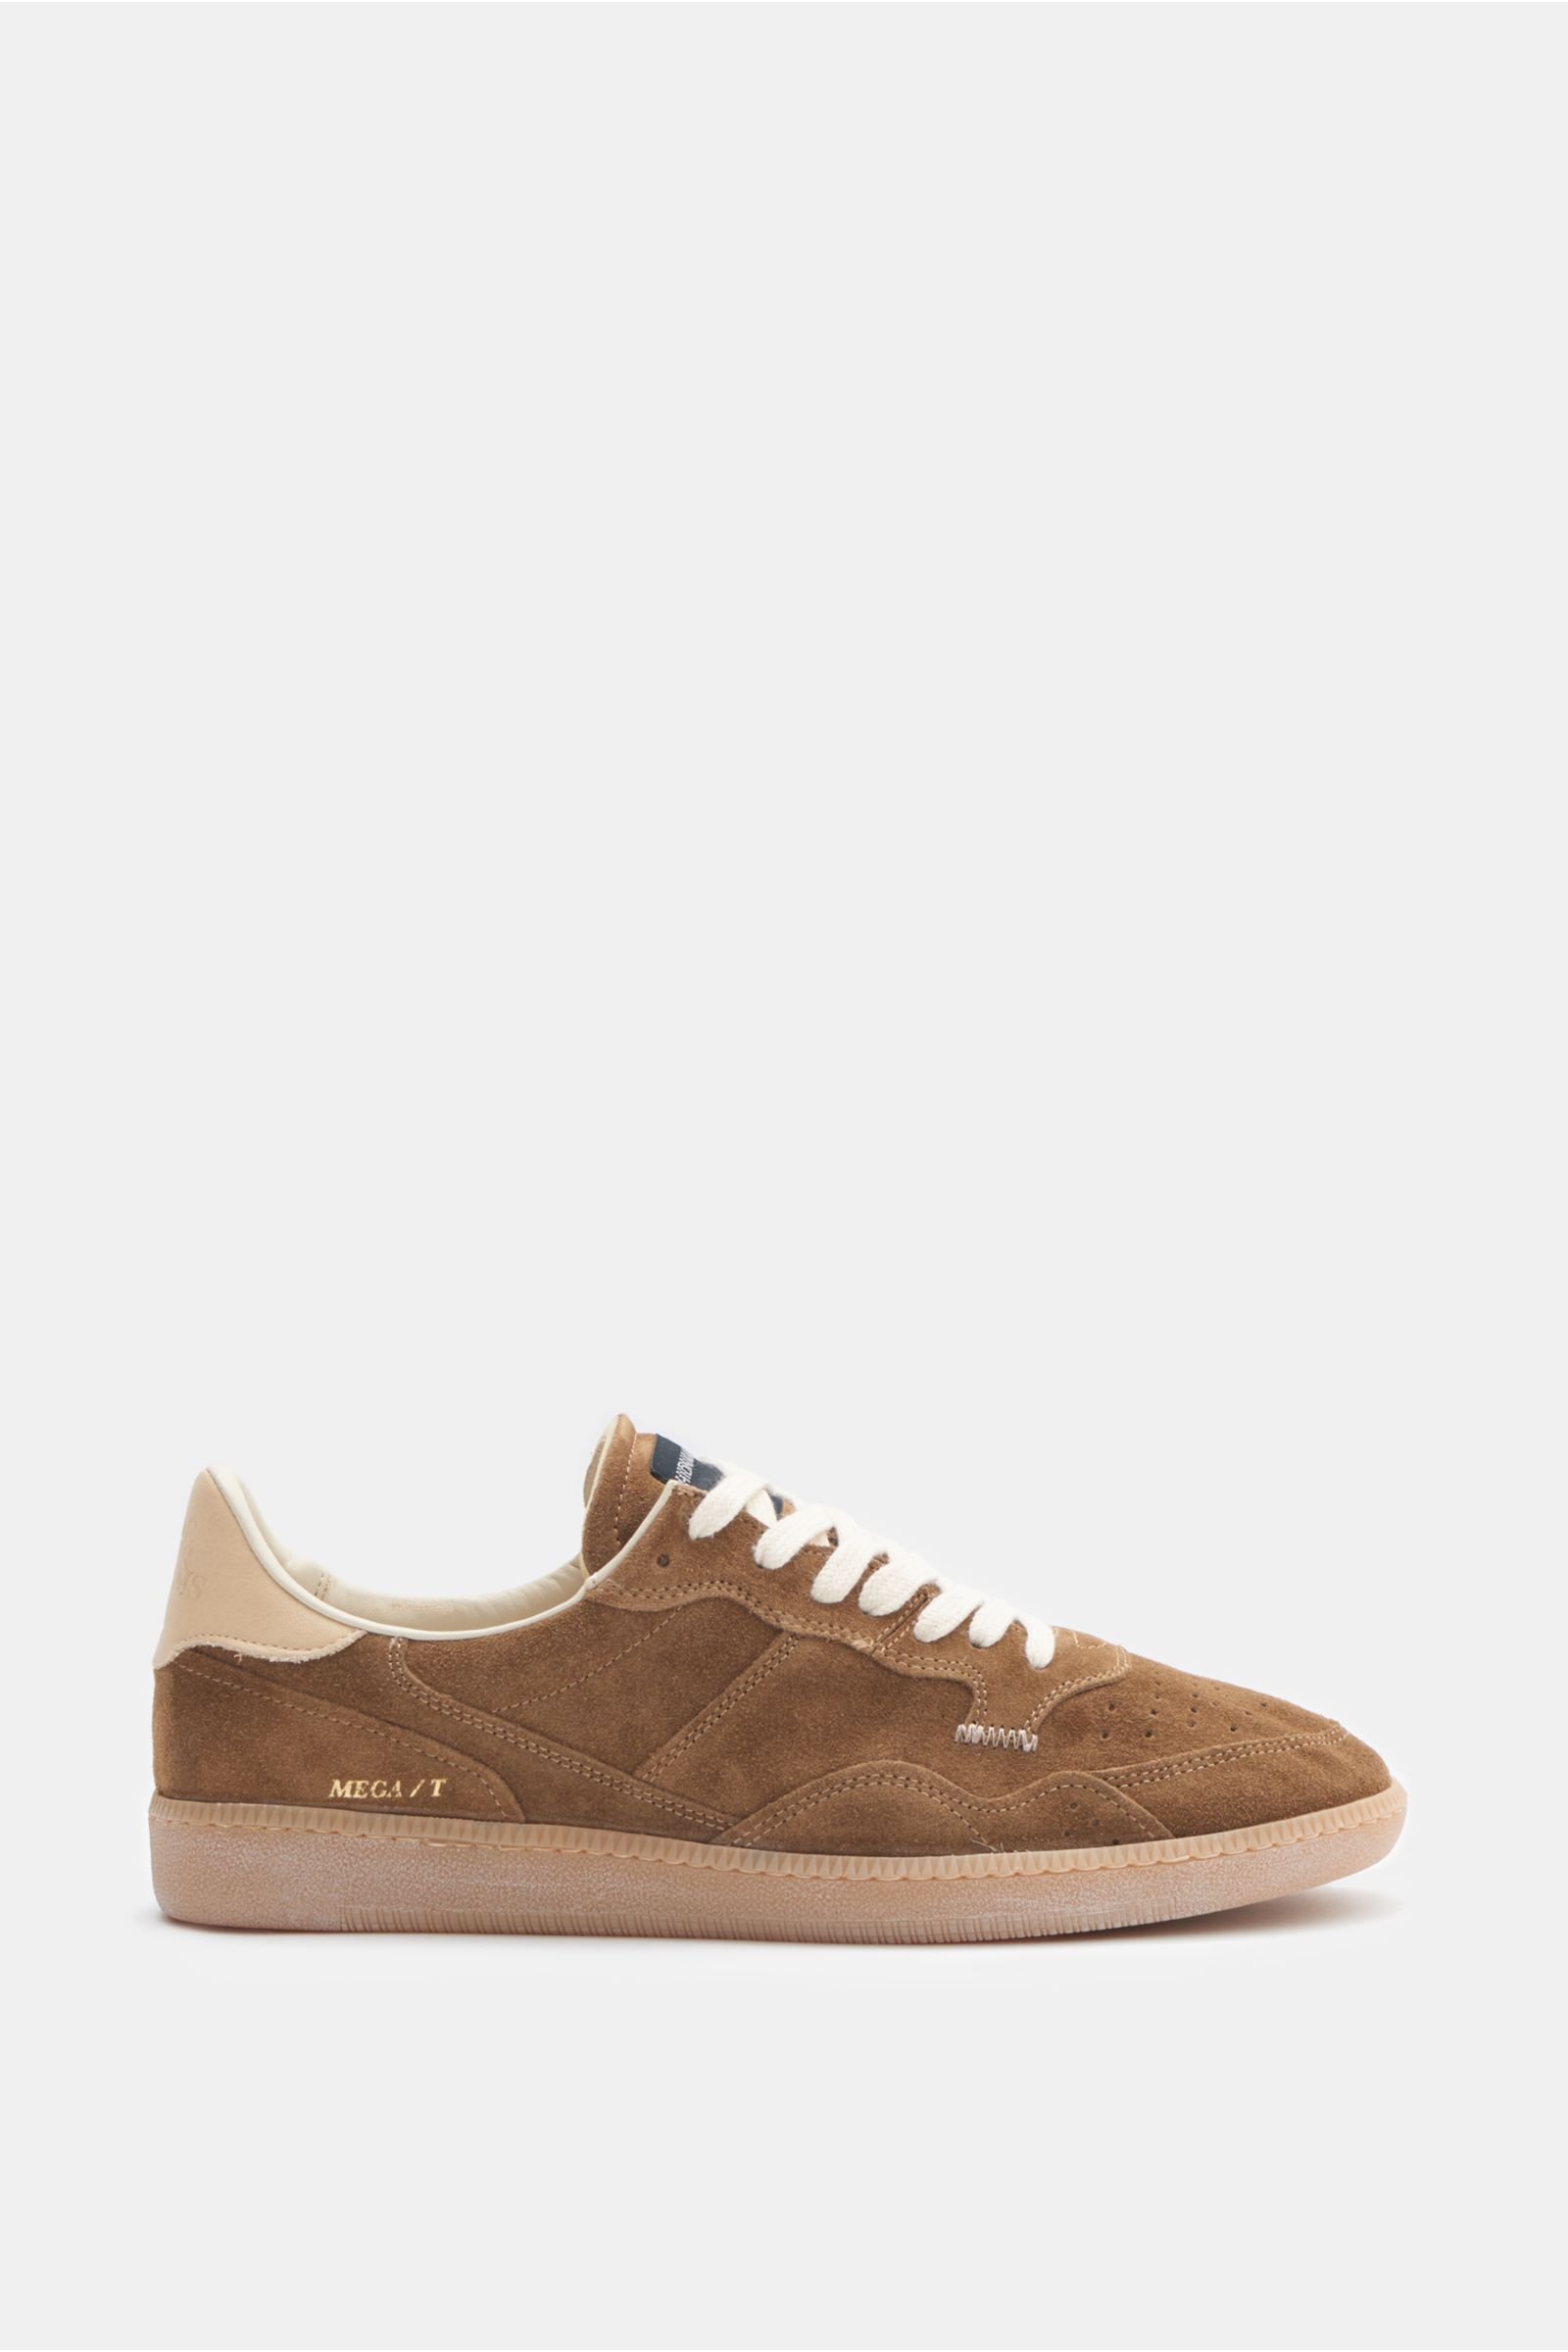 Sneakers 'Mega T' brown/beige